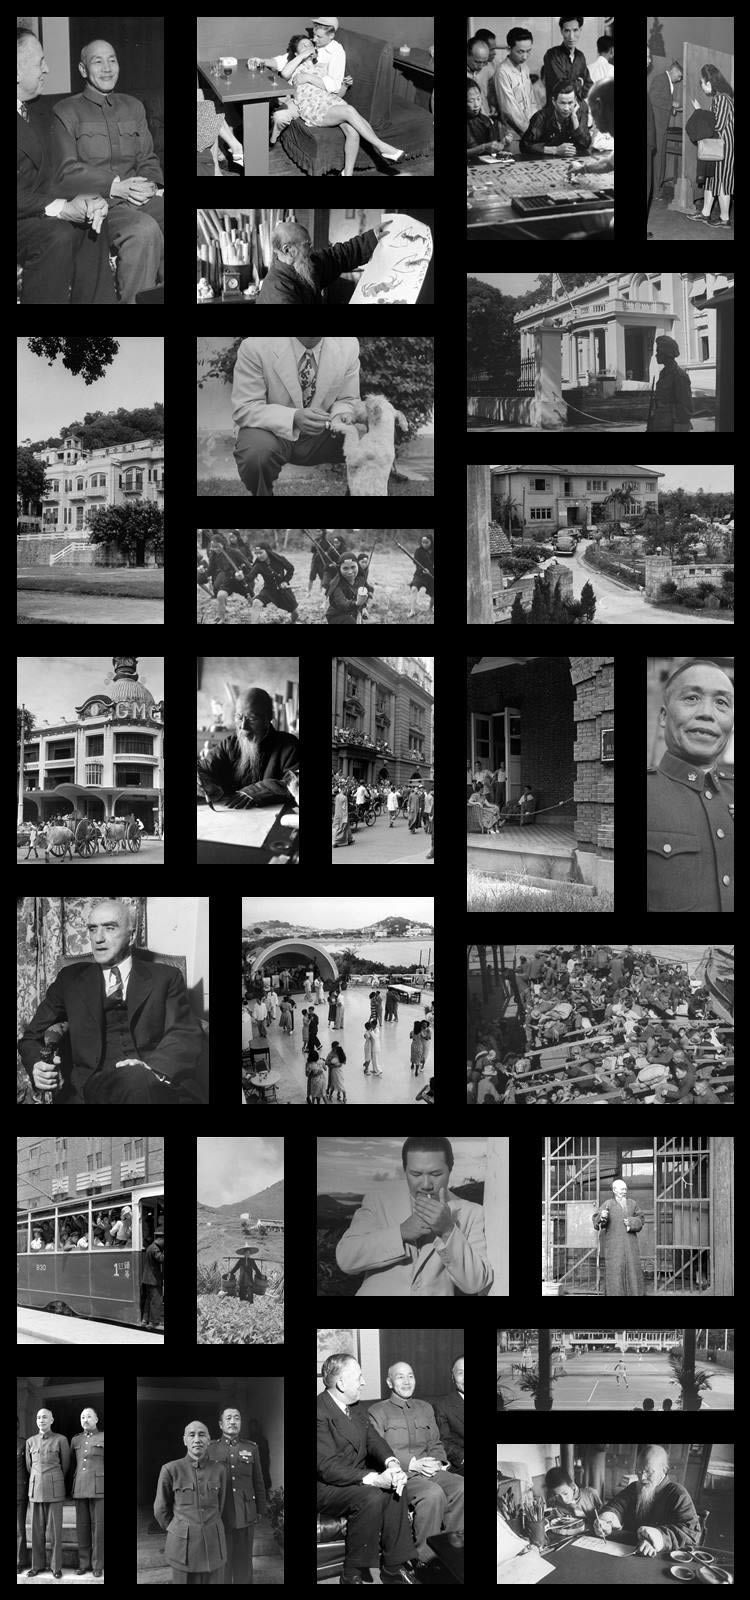 [老照片] 1947-1949年 民国政府老照片_2482幅